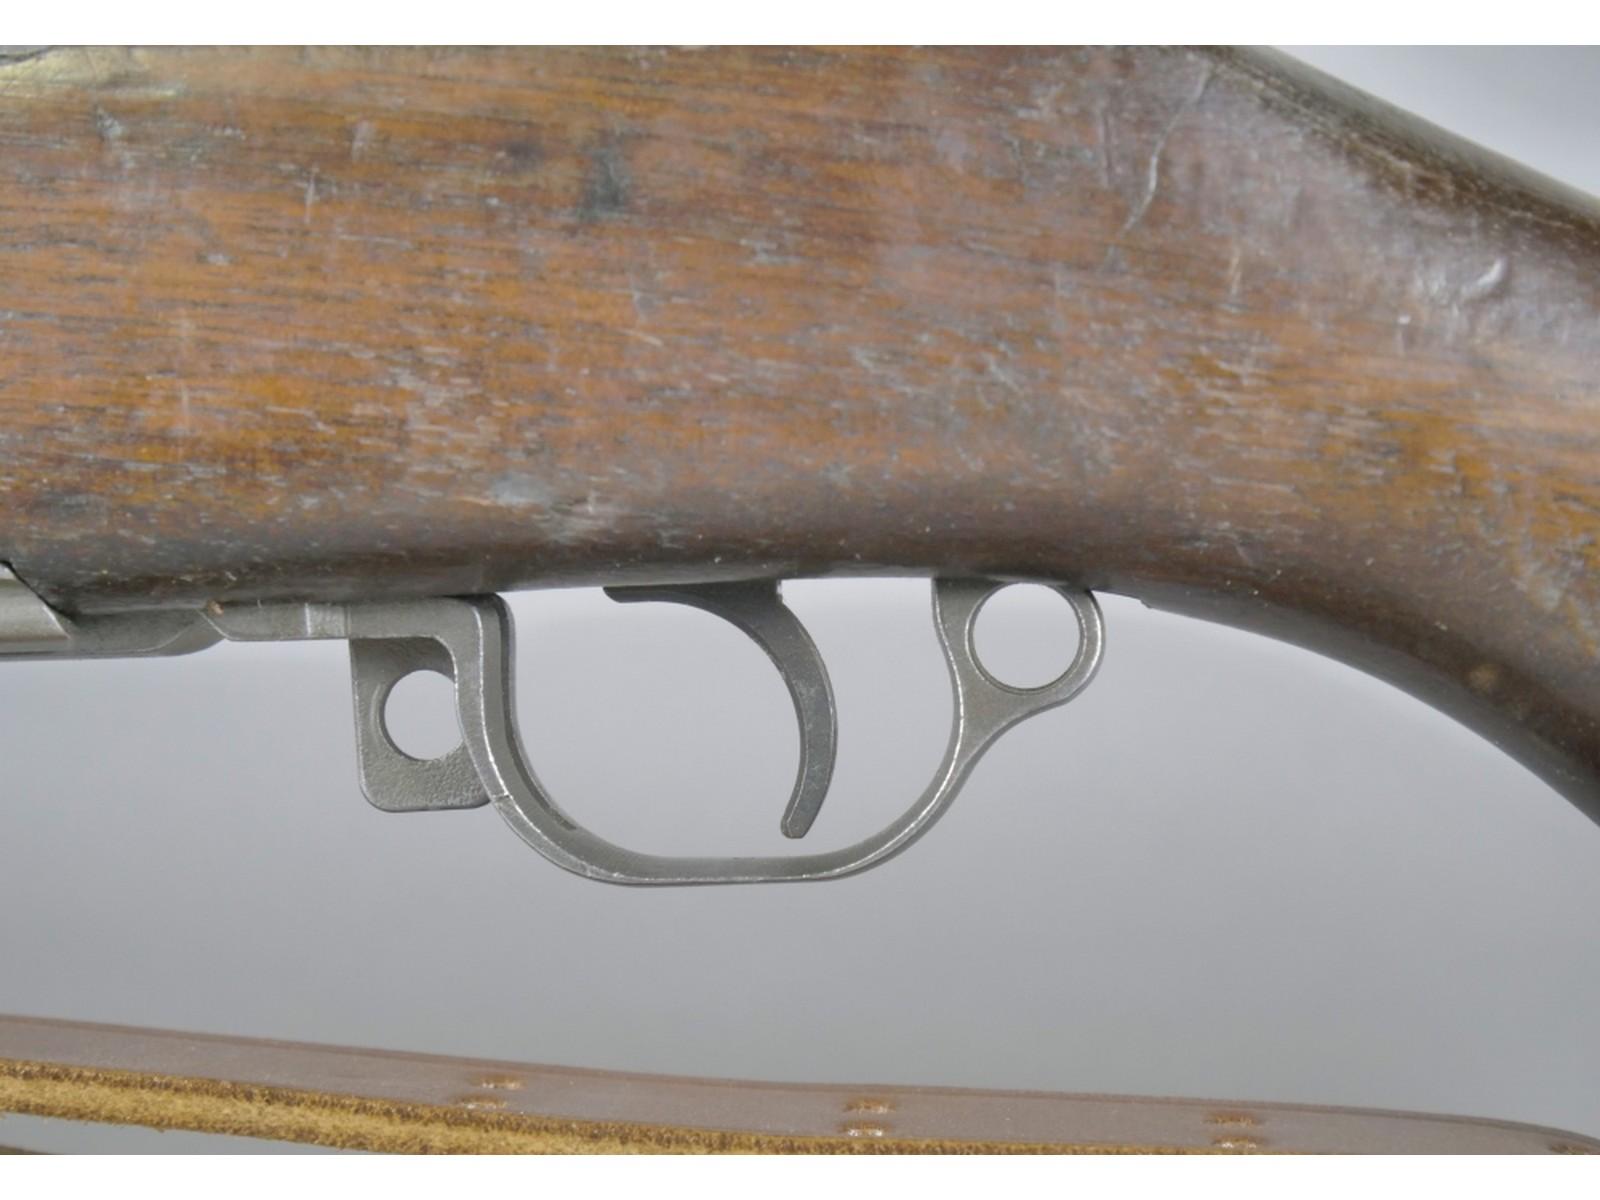 M1 Garand Rifle 30-06